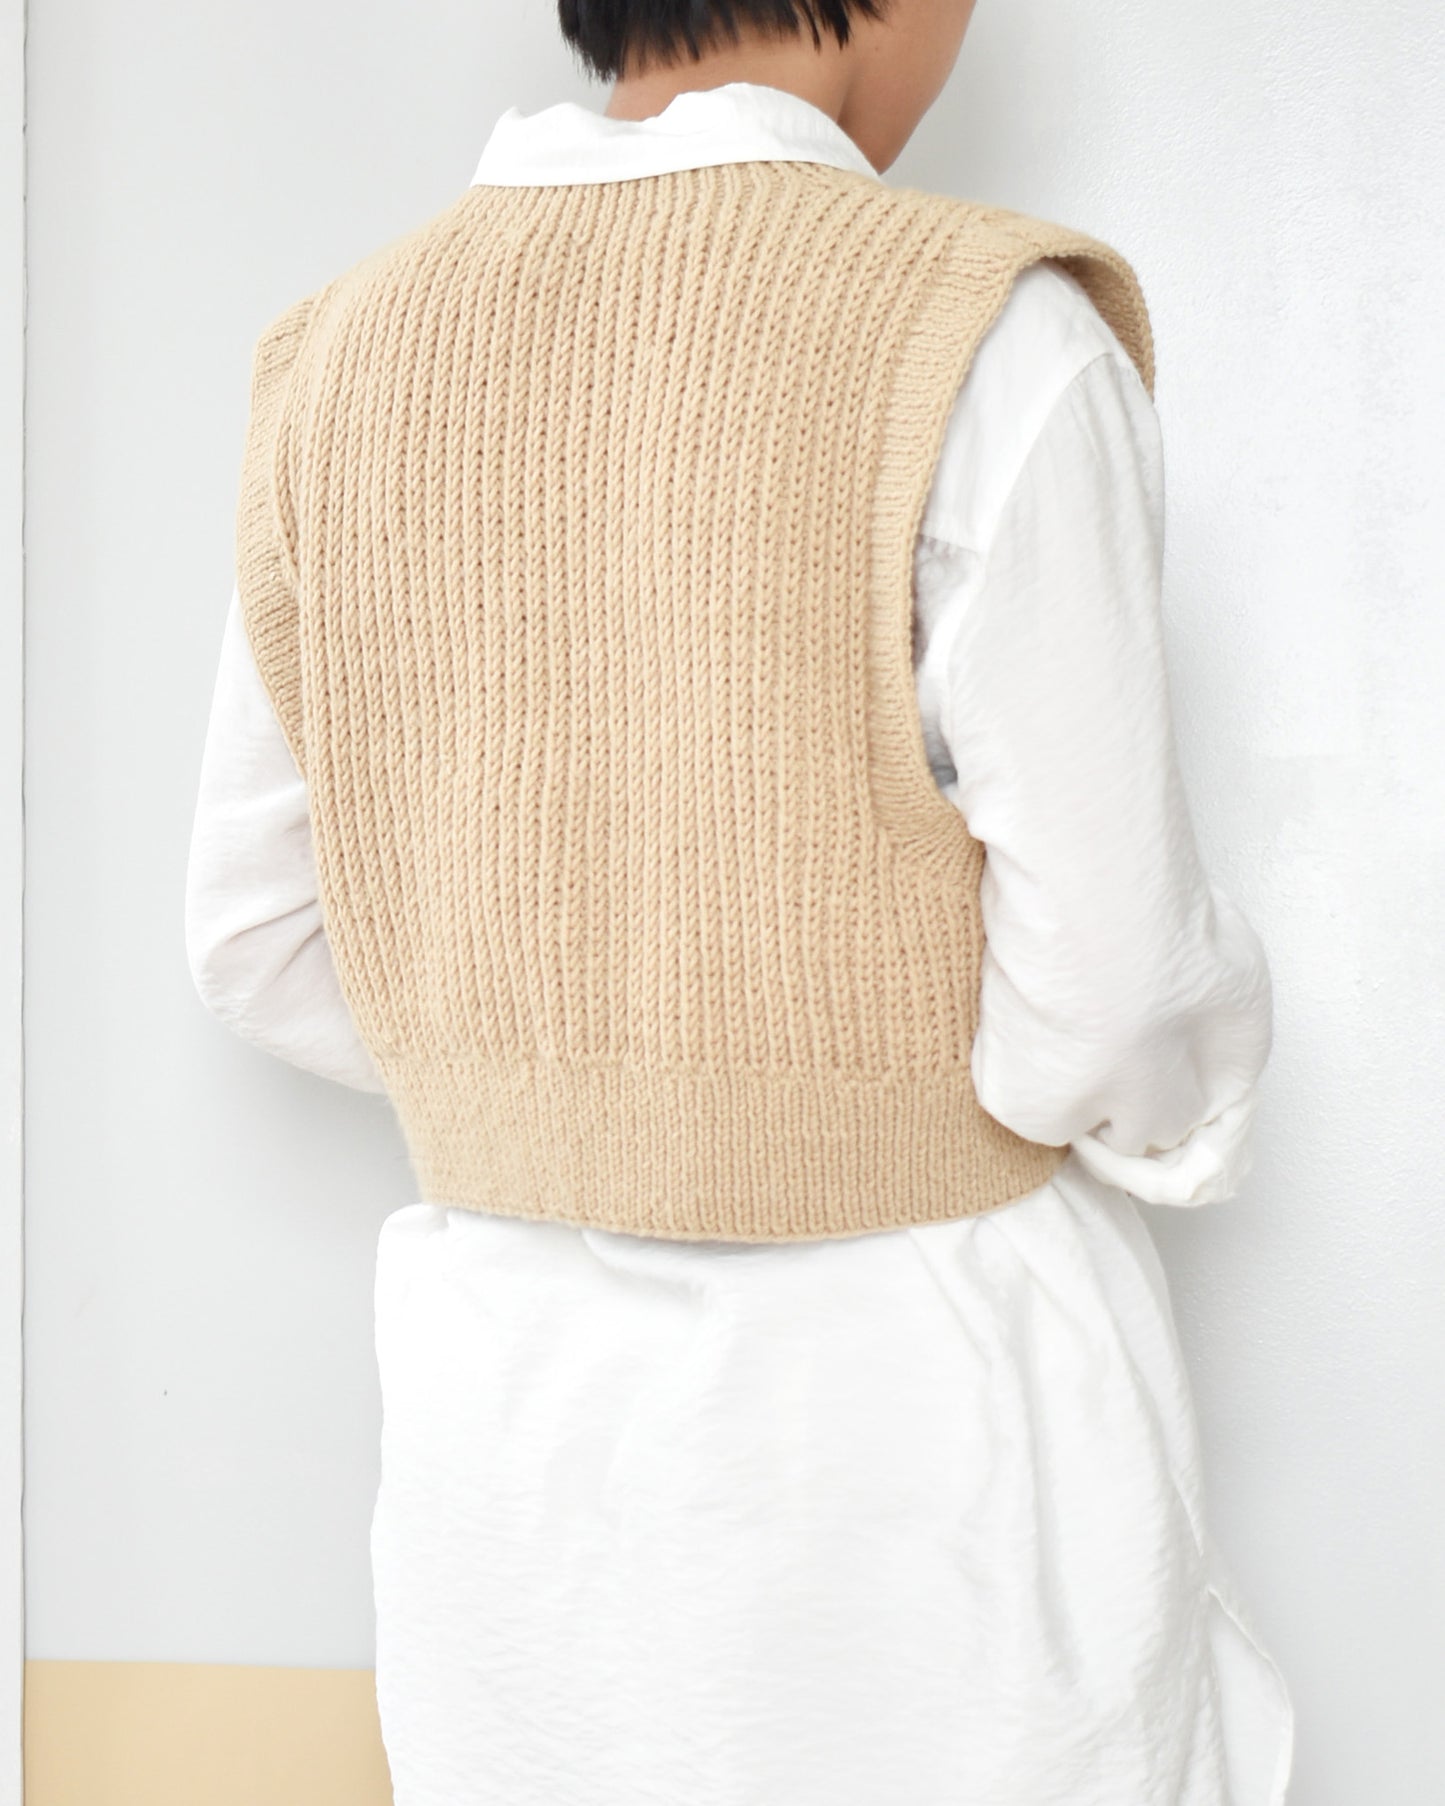 Vest No.10 | Easy knitting pattern